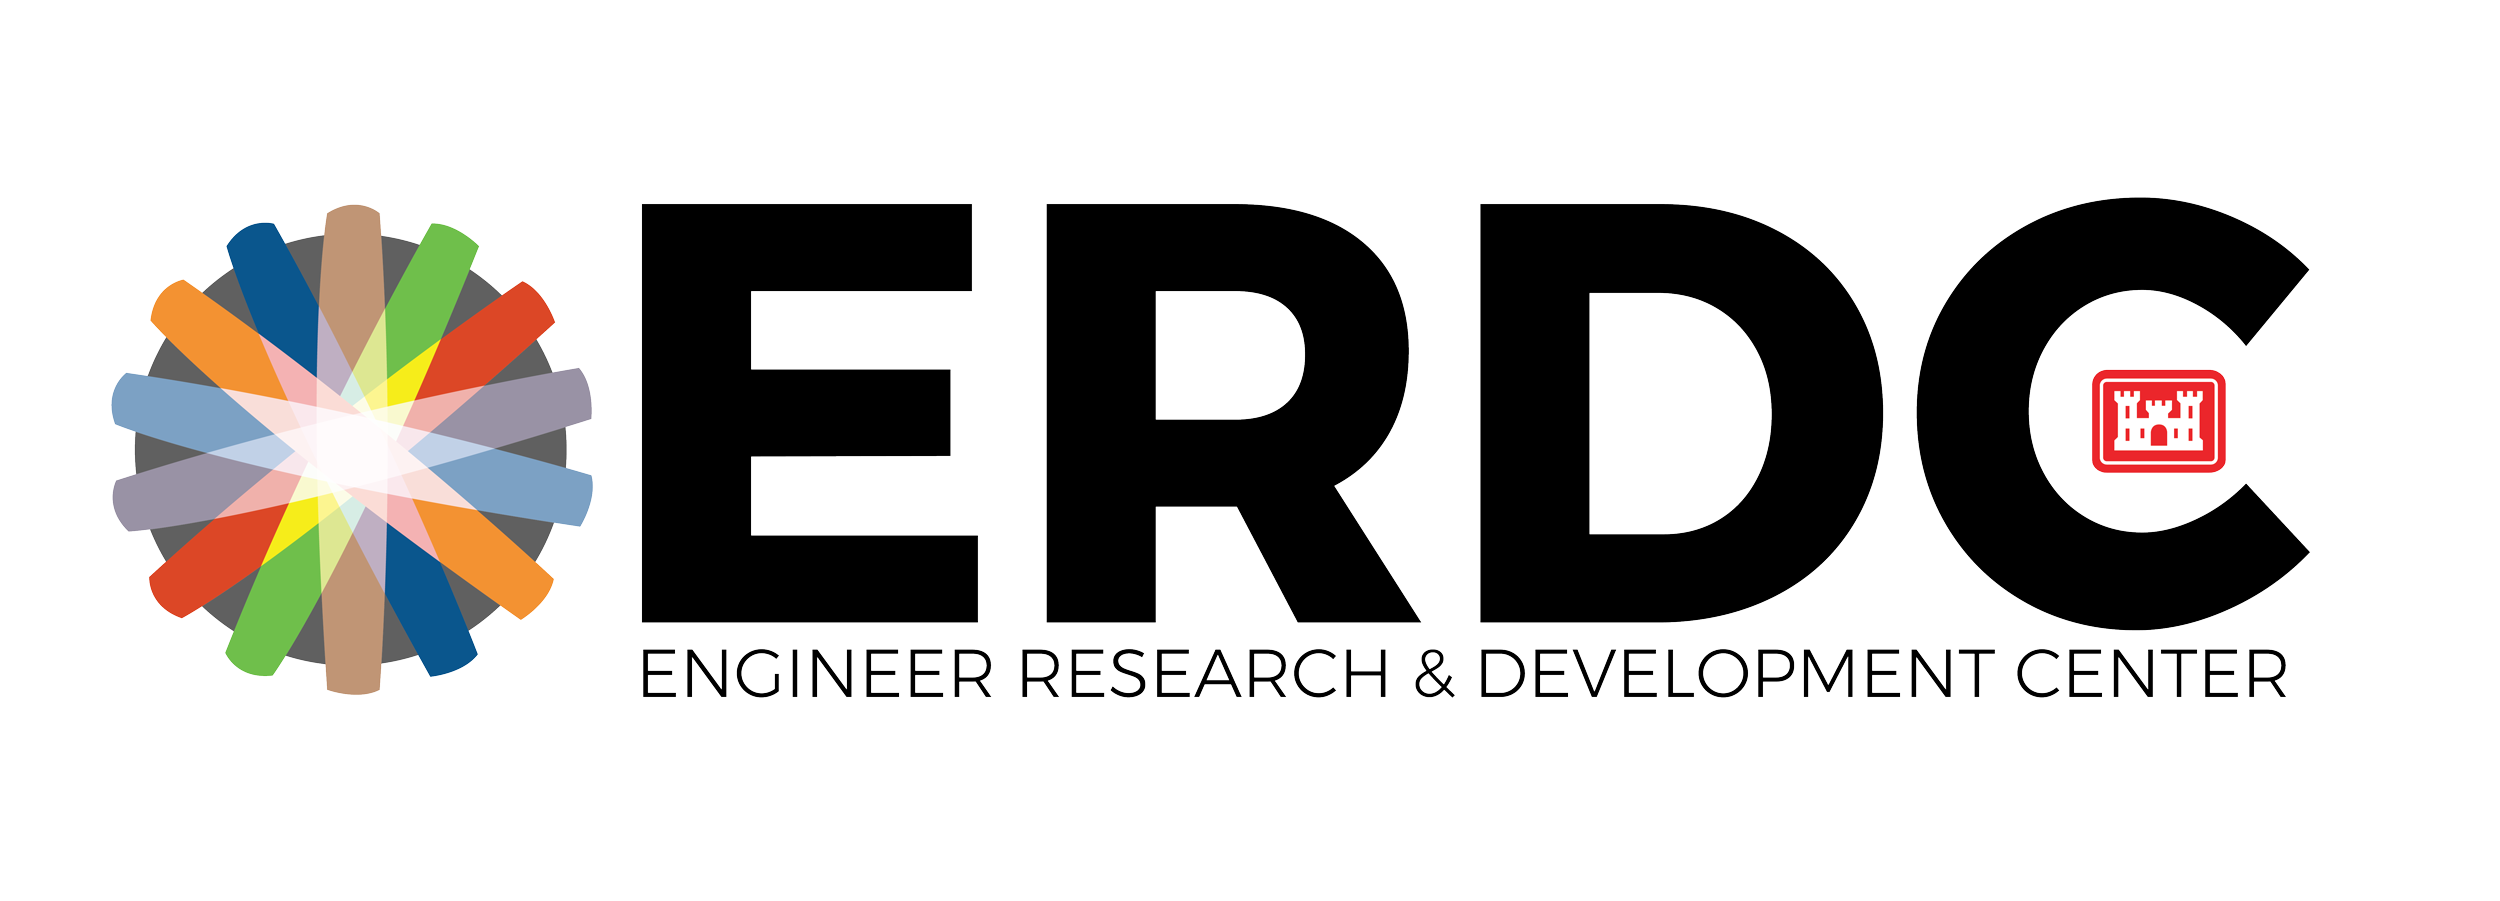 ERDC_logo